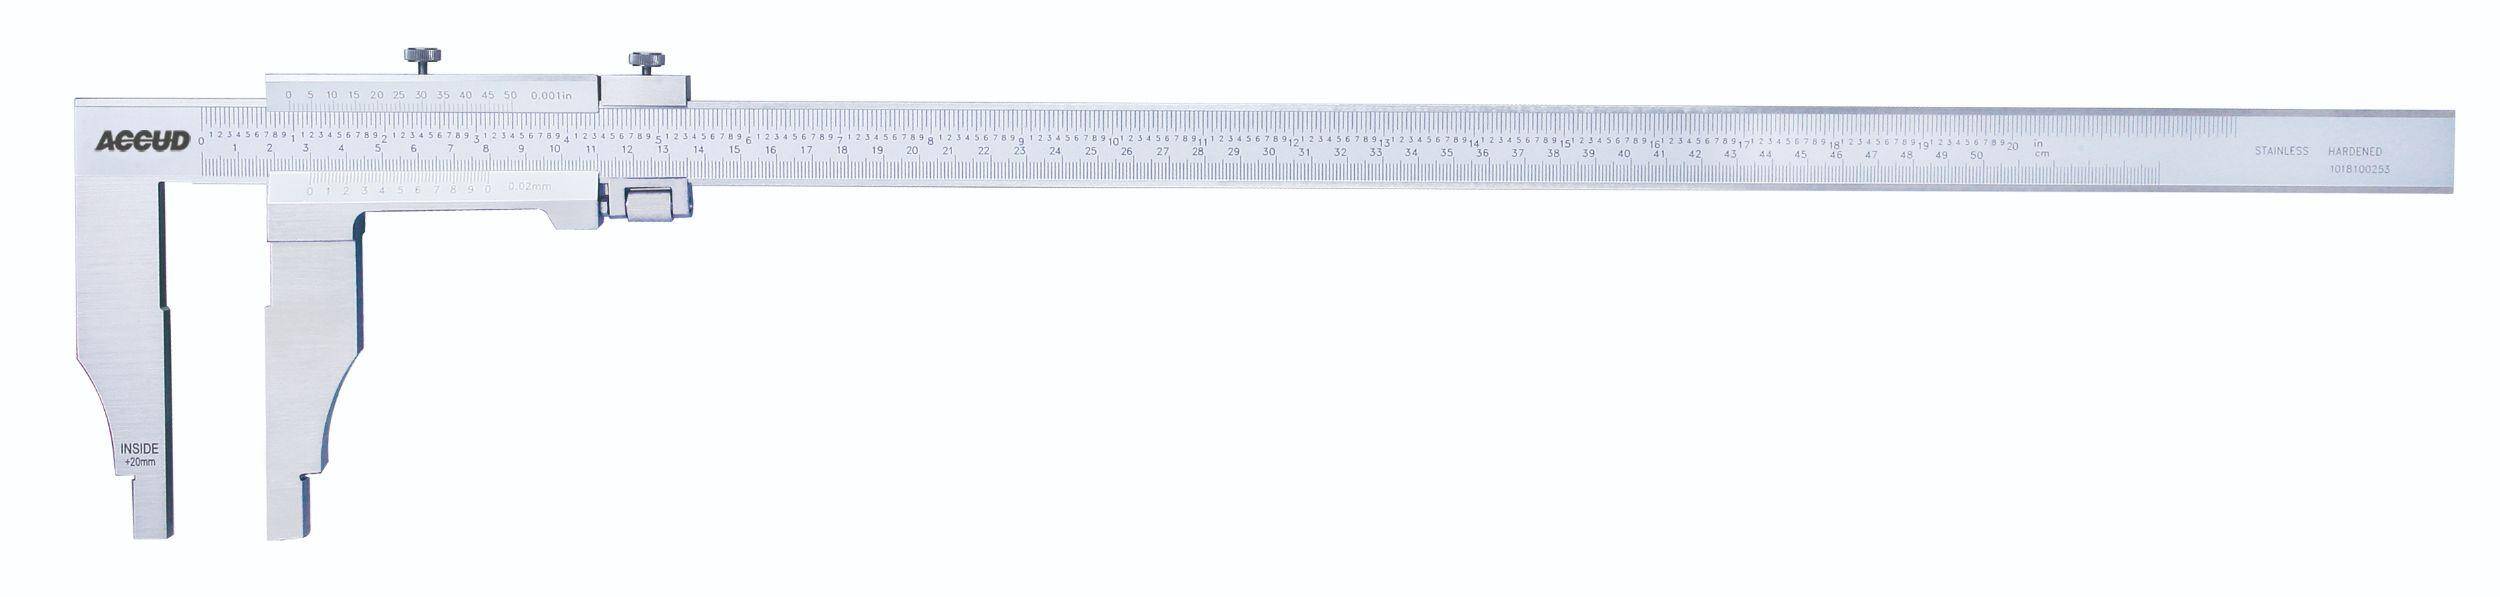 ACCUD suwmiarka analogowa 2000/0,05 mm jednostronna długość szczęk 150 mm 128-080-51